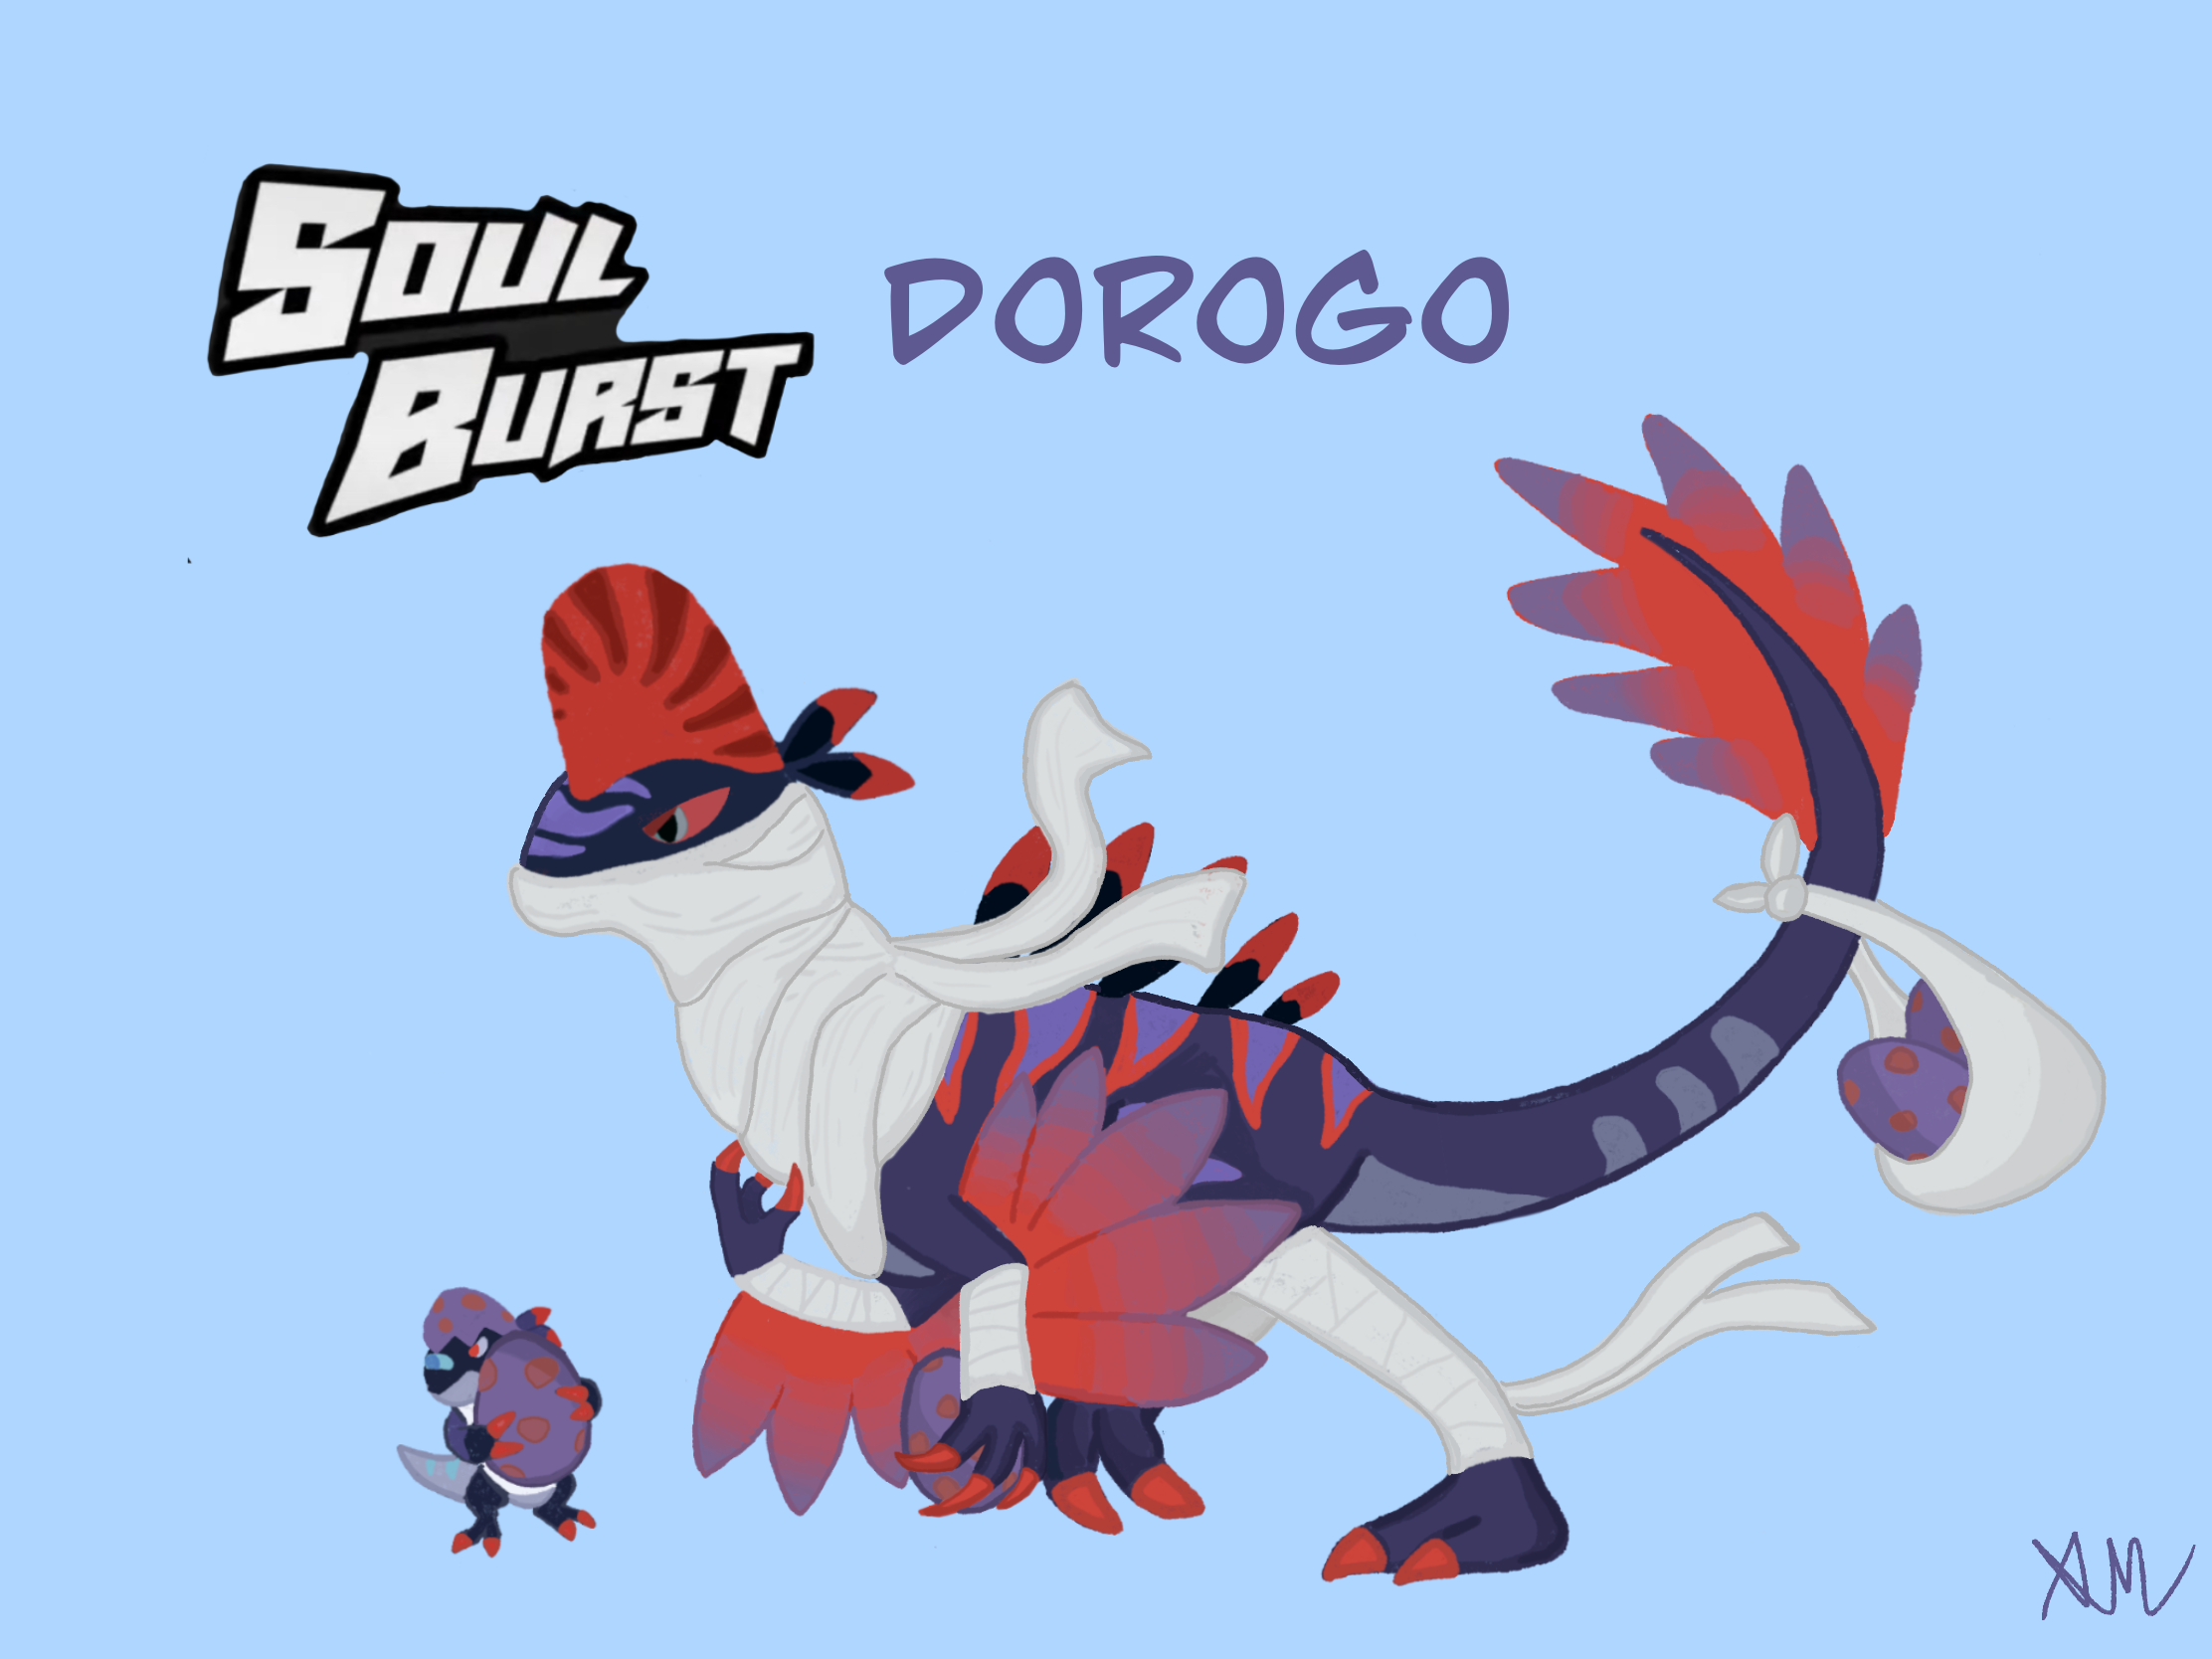 Soul burst dorogo concept!